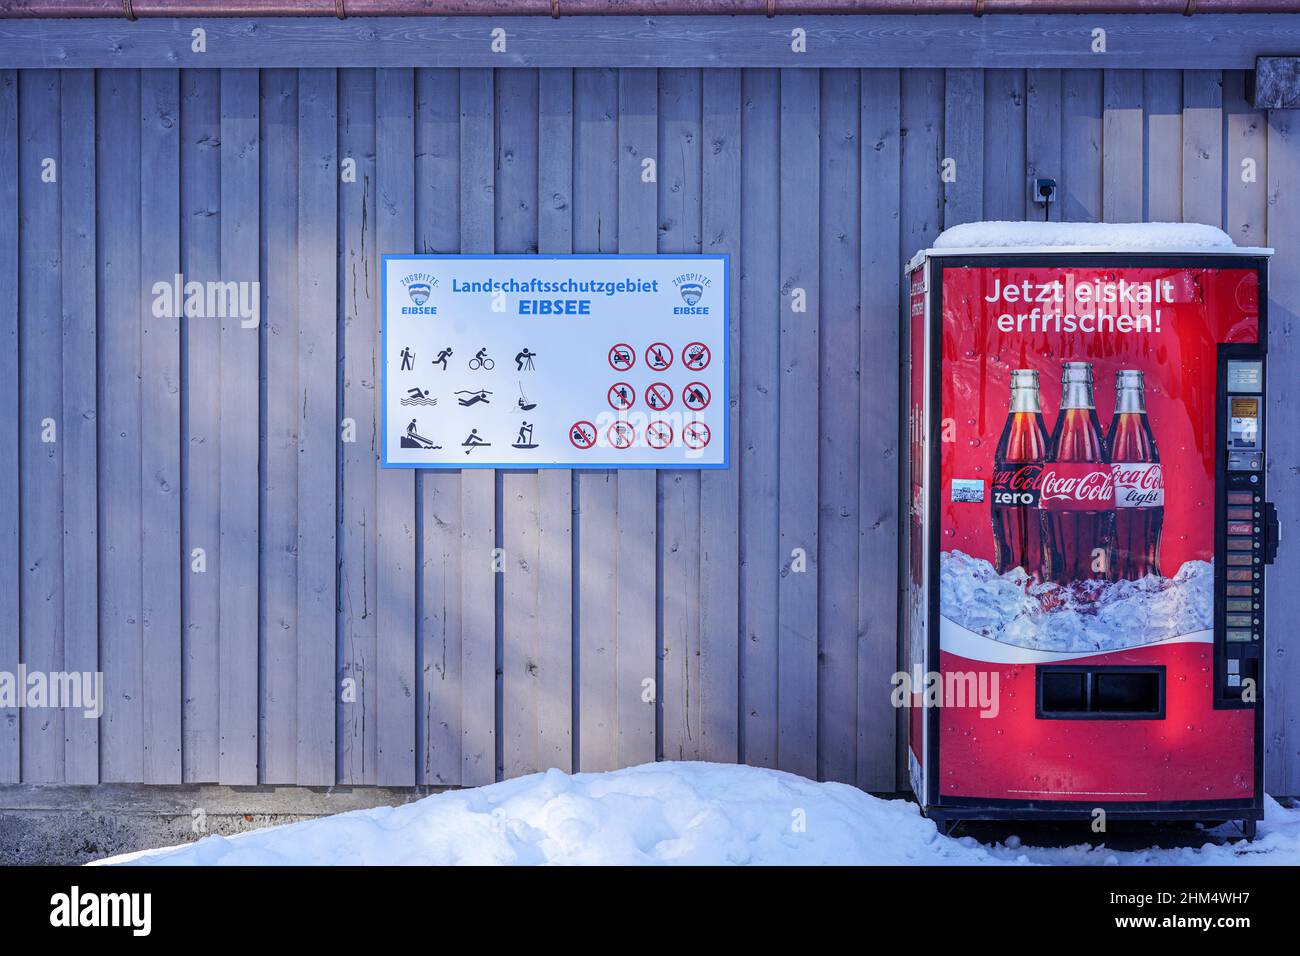 Rinfrescatevi ora ghiacciato, lo slogan pubblicitario su un distributore automatico Coca Cola a Eibsee, Zugspitze. La neve si trova di fronte al distributore automatico. Foto Stock